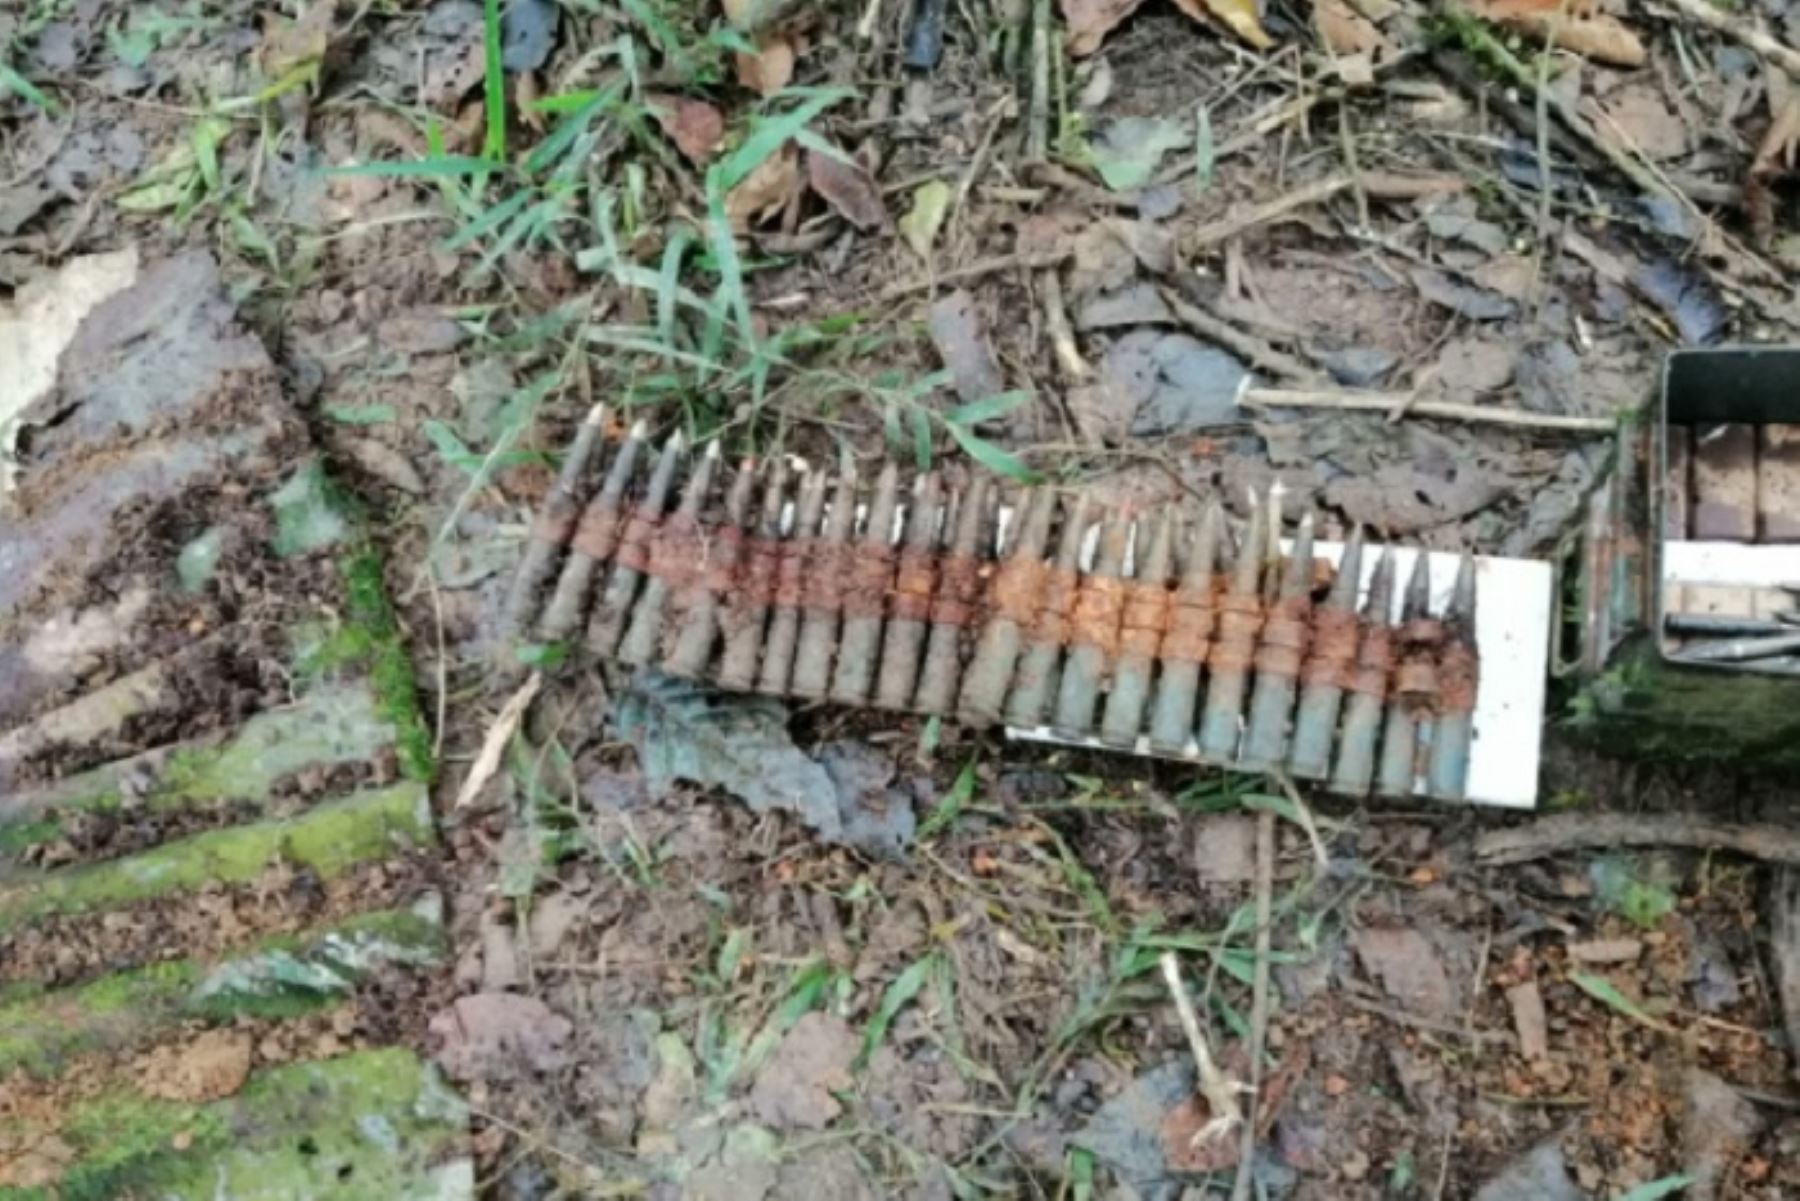 La Policía encontró cartuchos, proyectiles tipo granada, entre demás arsenal de guerra, debajo de la vegetación.